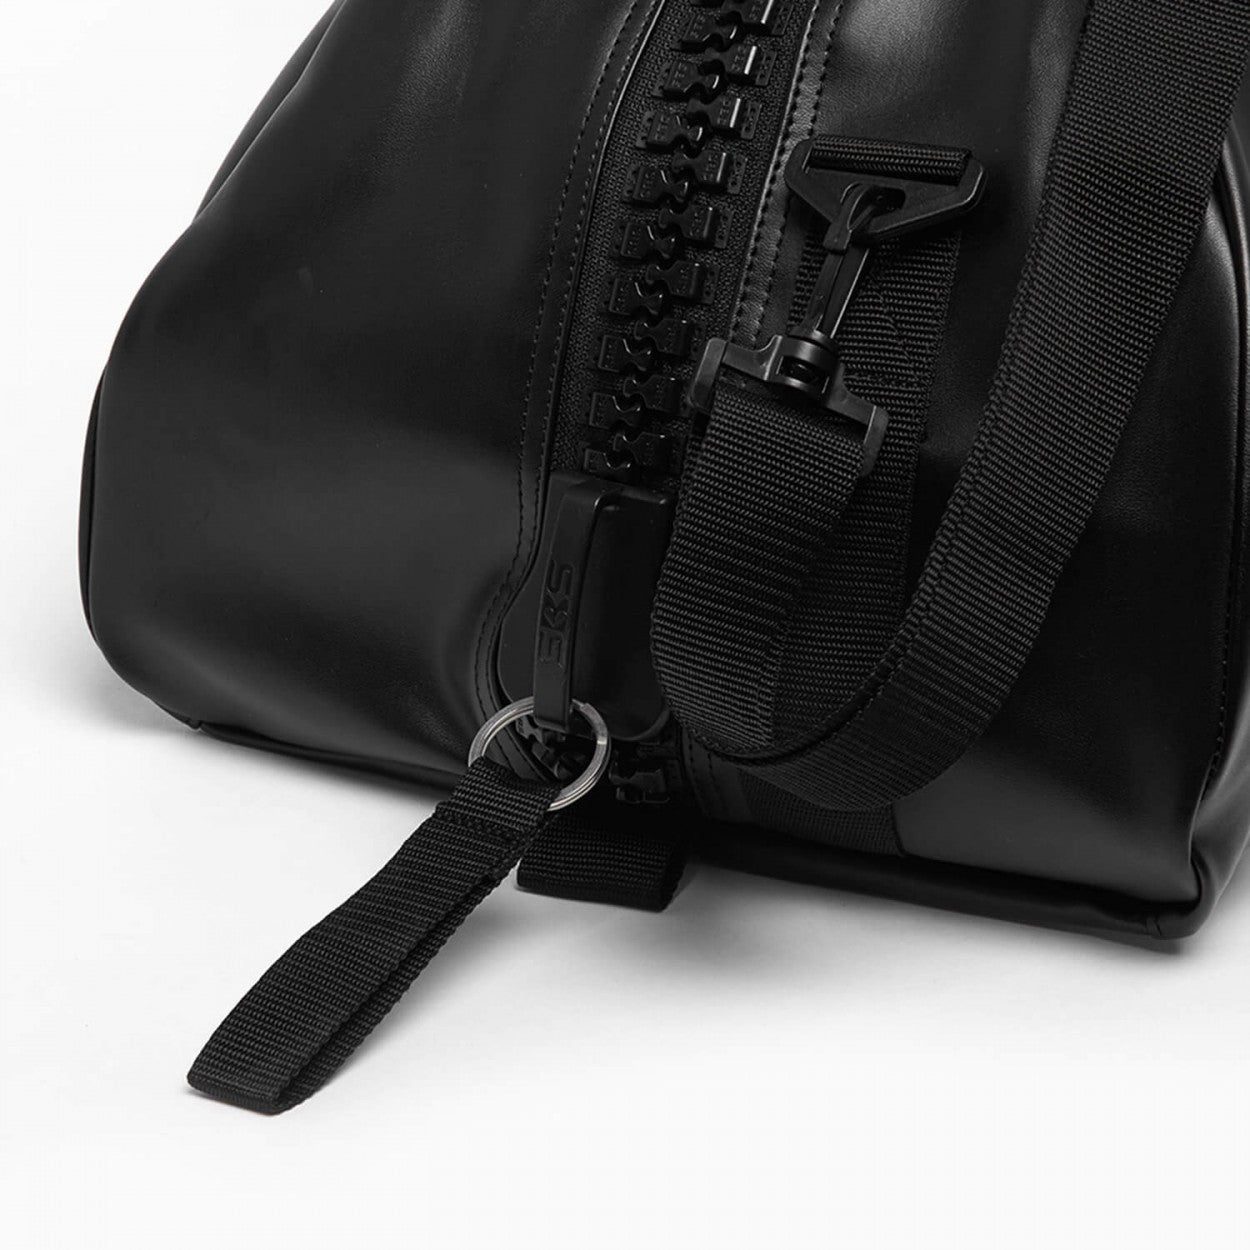 Sports Bag adidas 3 IN 1 TEAMBAG (62x31x31cm), Black/Blue 